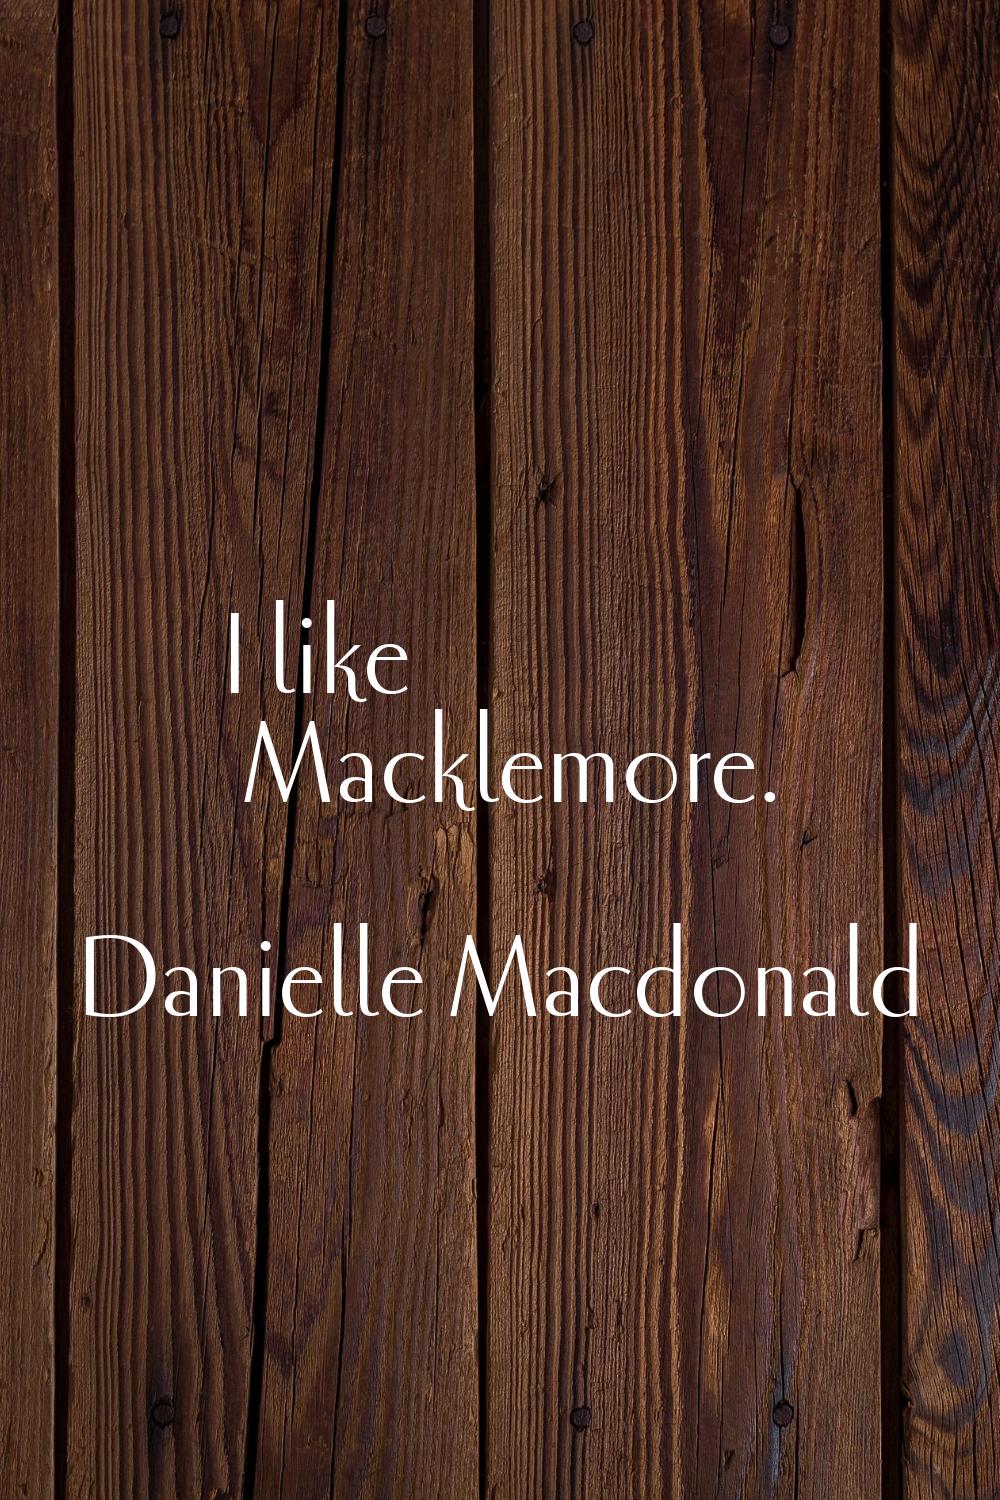 I like Macklemore.